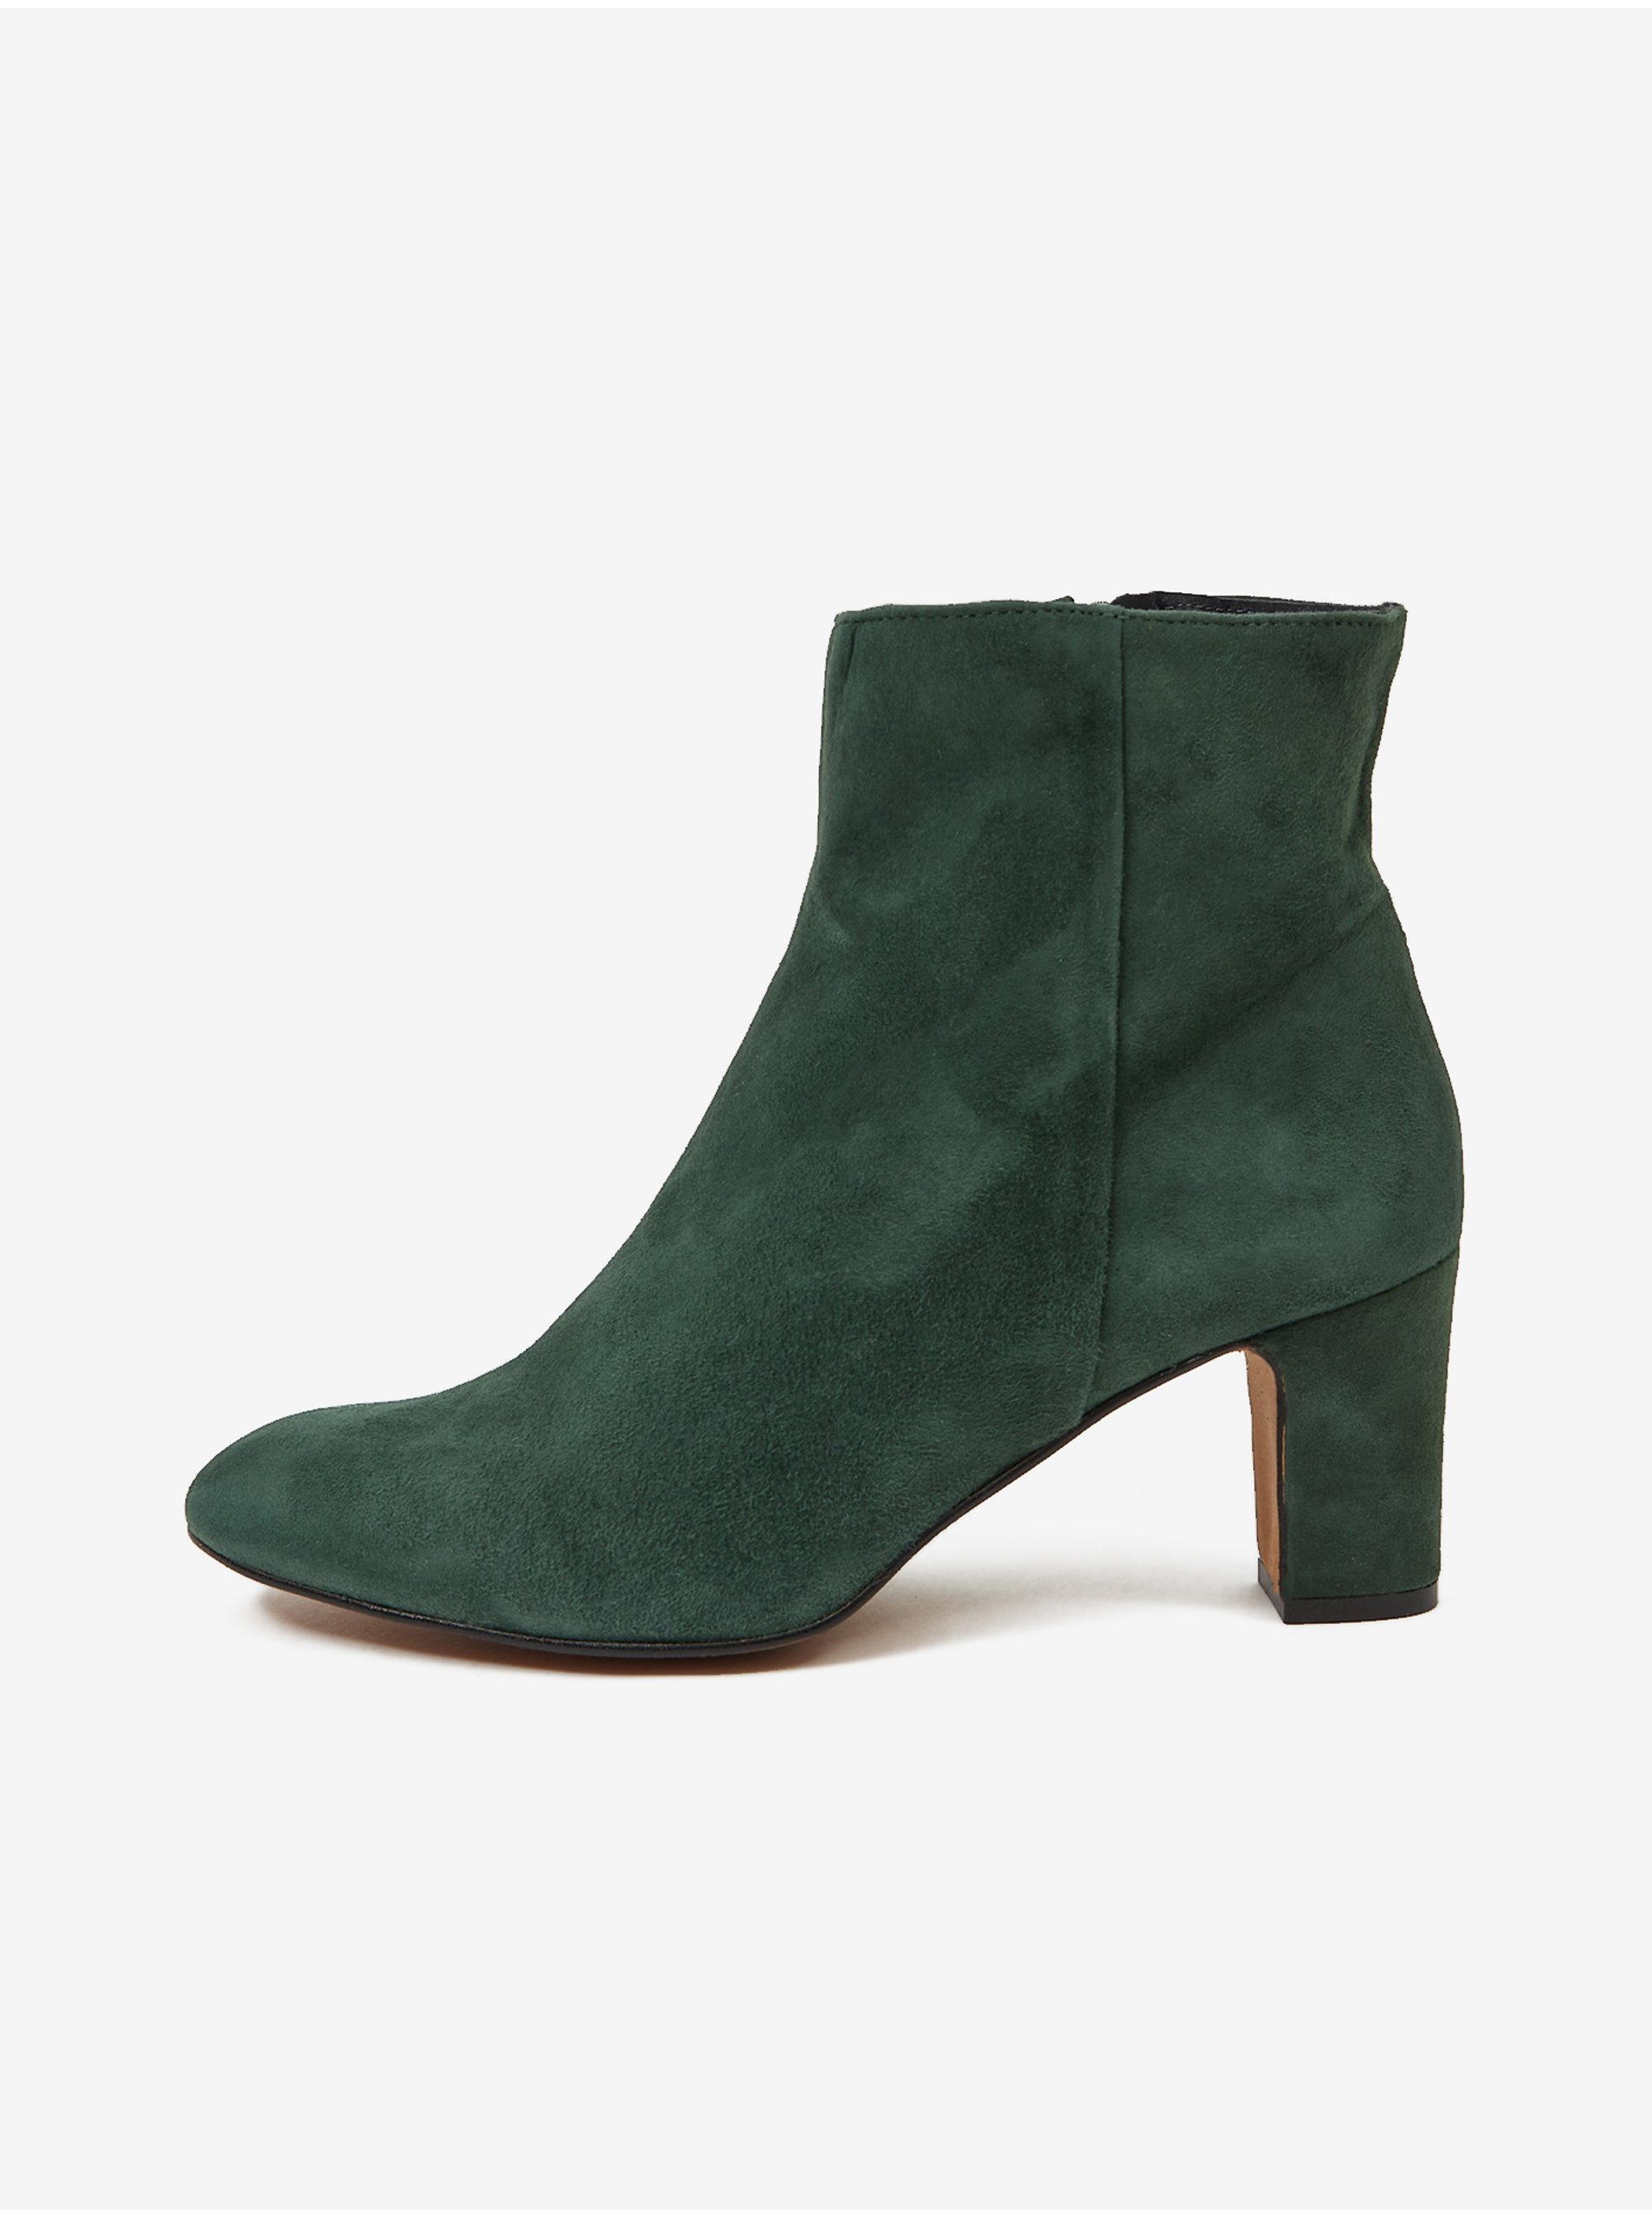 E-shop Tmavě zelené kotníkové semišové boty na podpatku OJJU